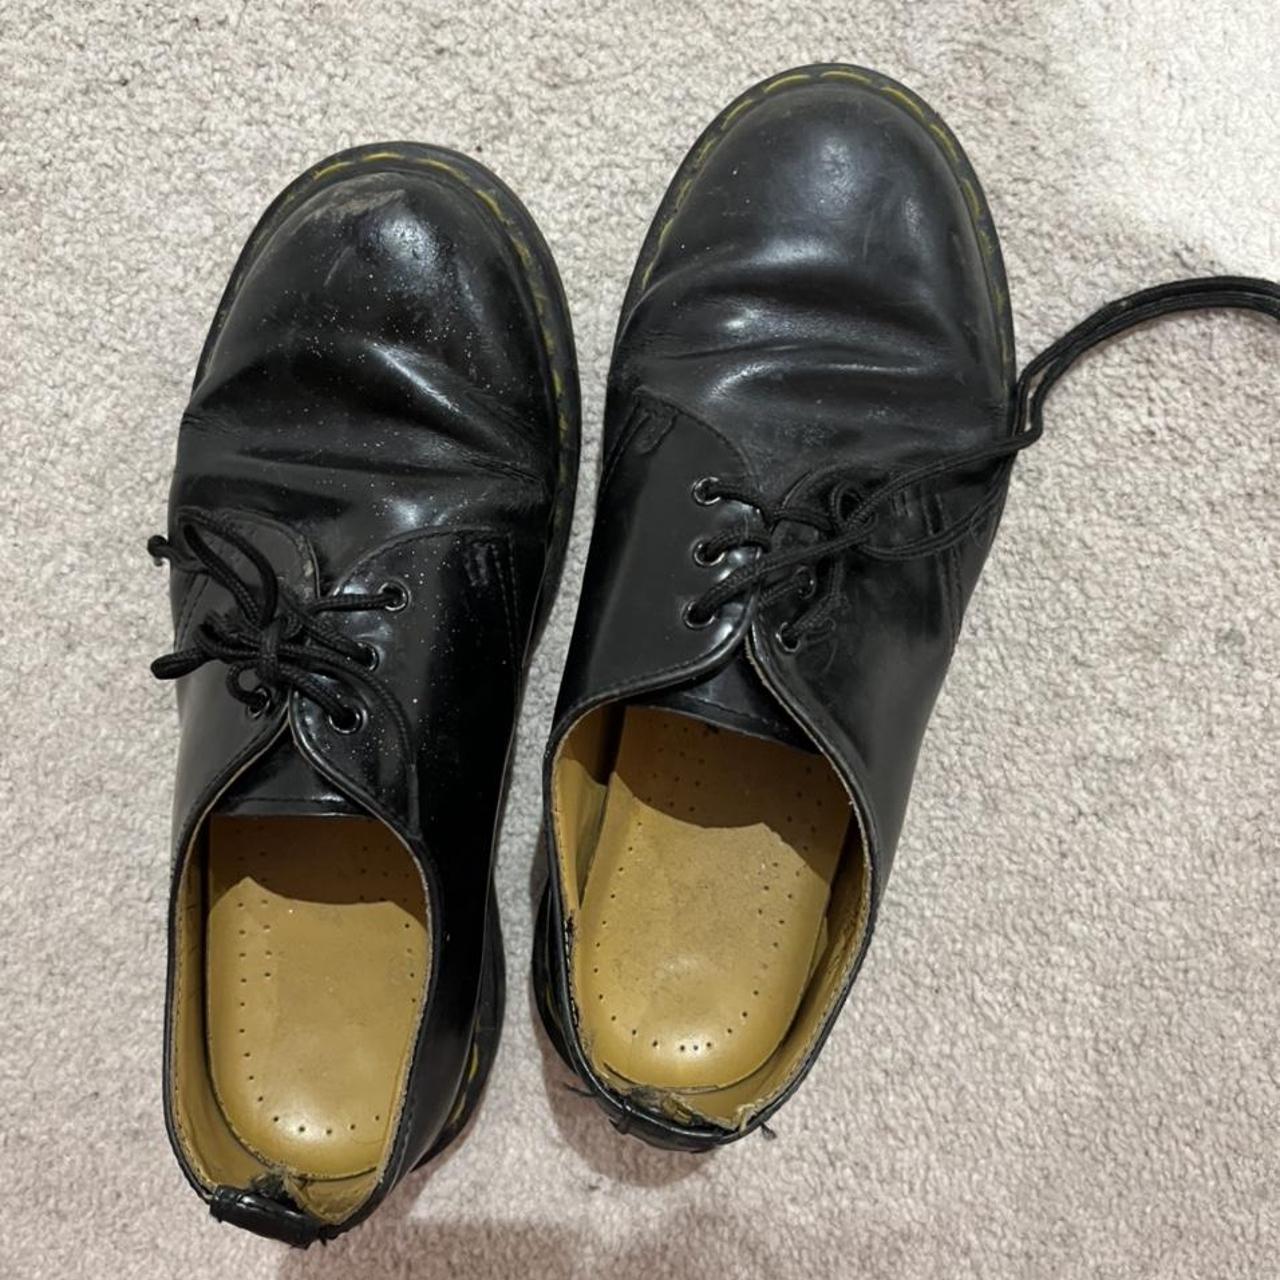 Dr marten shoes black leather gel soles size 5 used... - Depop